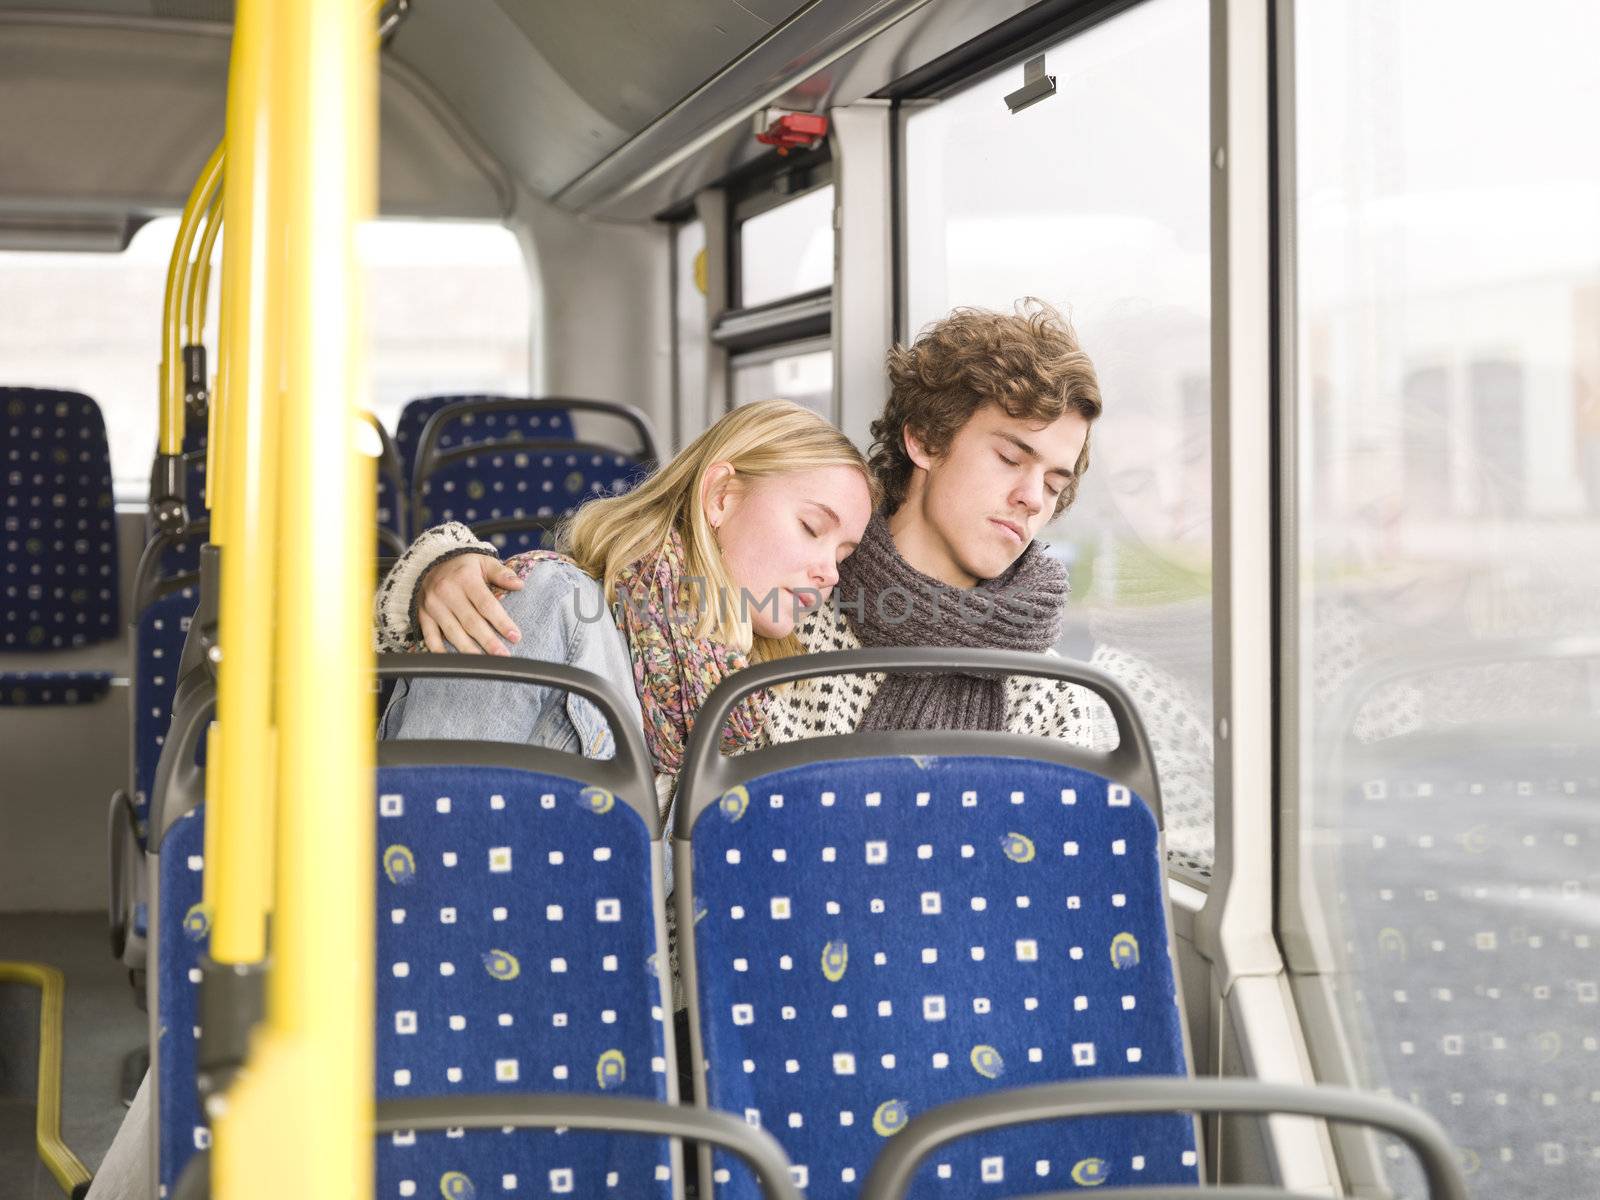 Sleeping on the bus by gemenacom